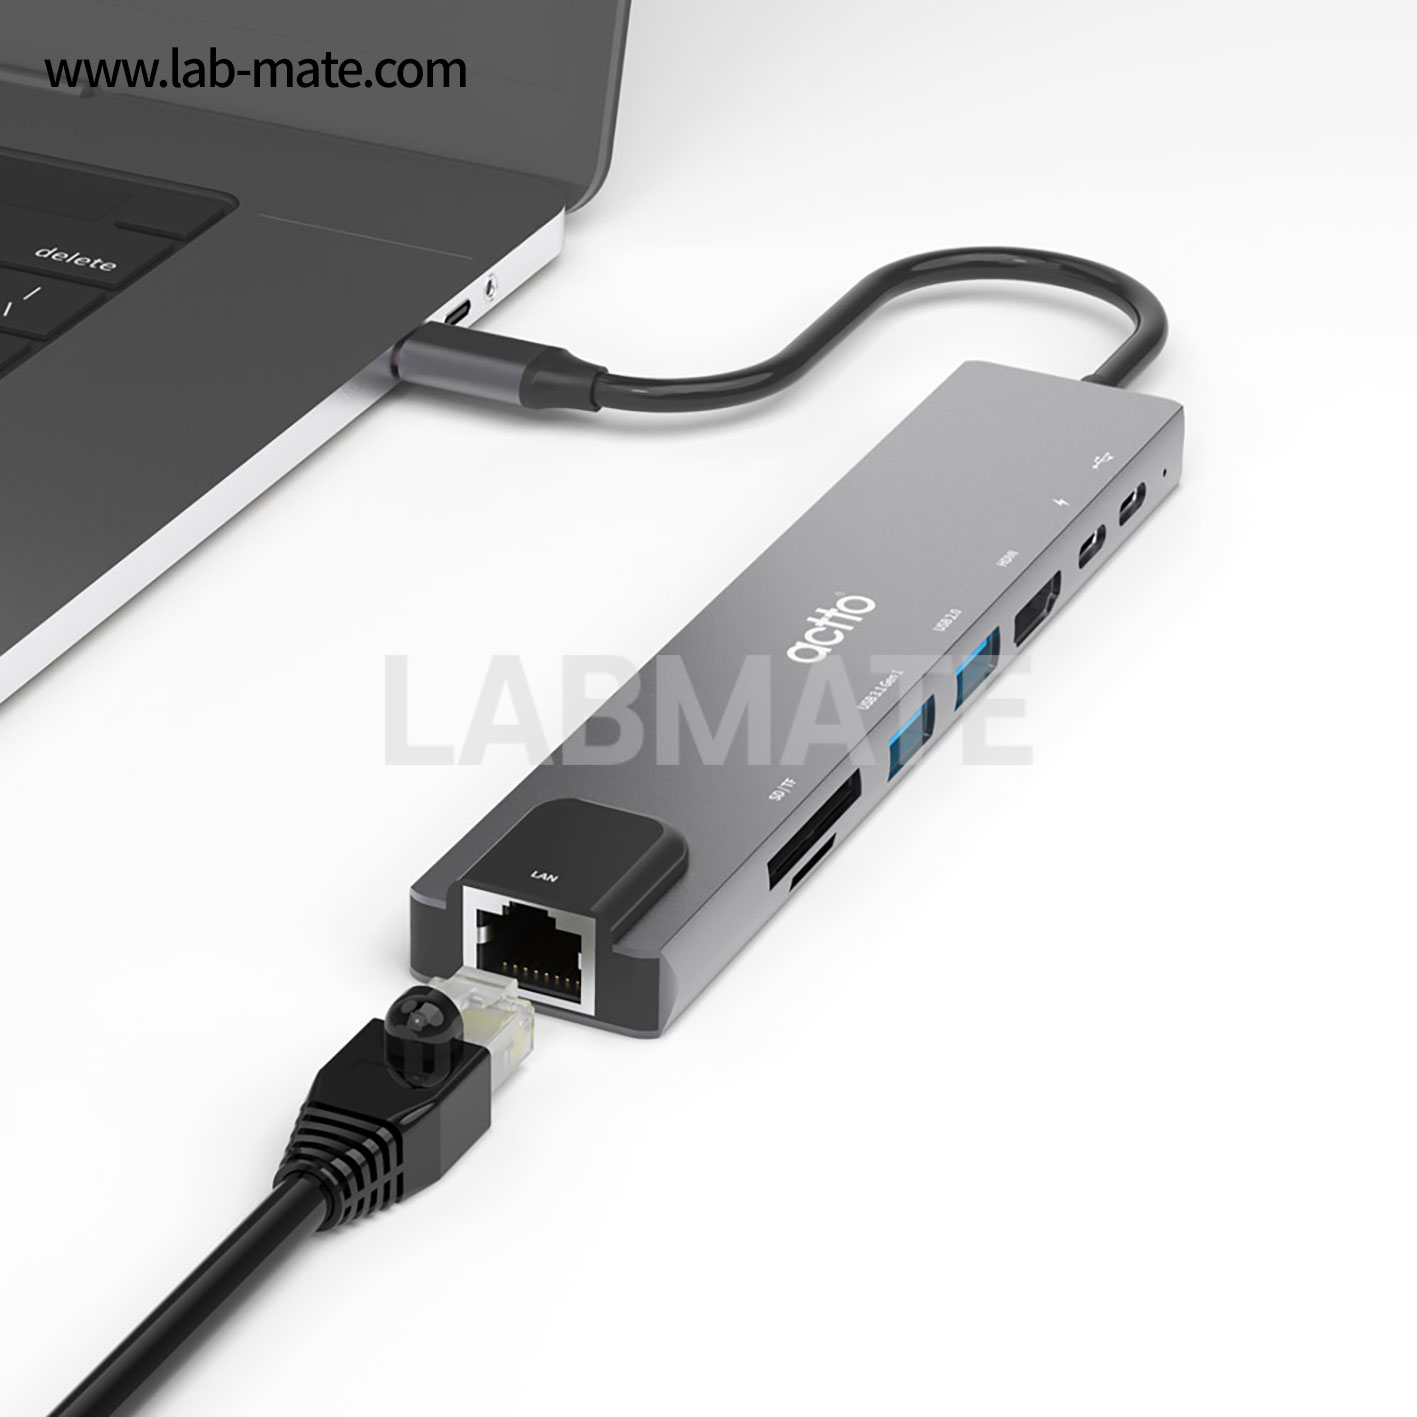 랩메이트,8 in 1 타입C 멀티 허브,PD + 타입C(data전송) + HDMI + USB3.0 + USB2.0 + TF + SD + 랜 / 미러링 / 4K [그레이],ACTTO